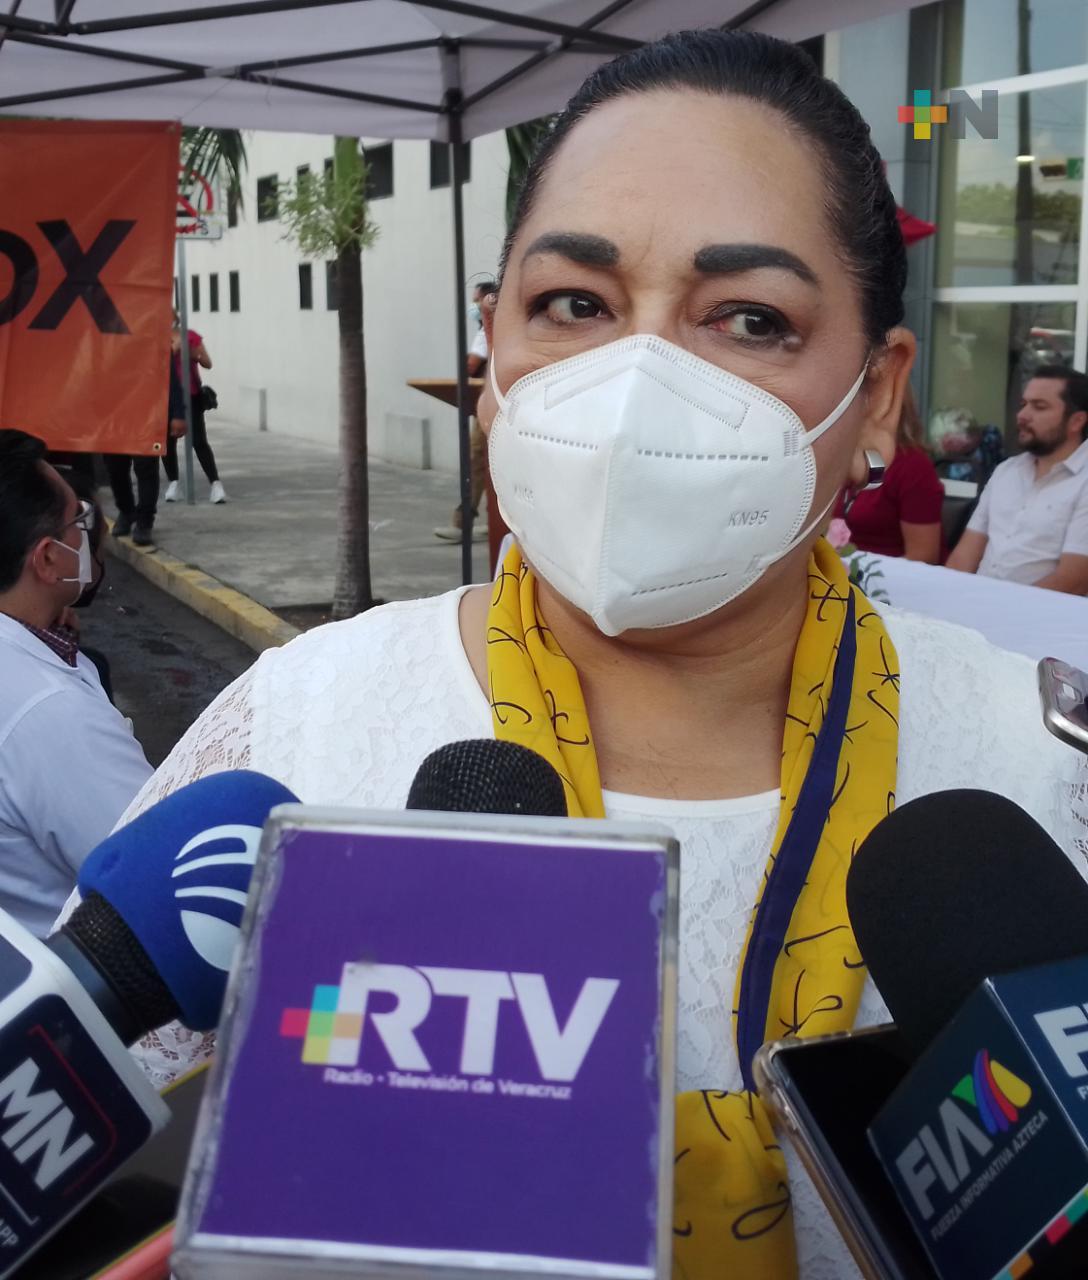 AMANC Veracruz conminará a jóvenes a convertirse en donadores de sangre